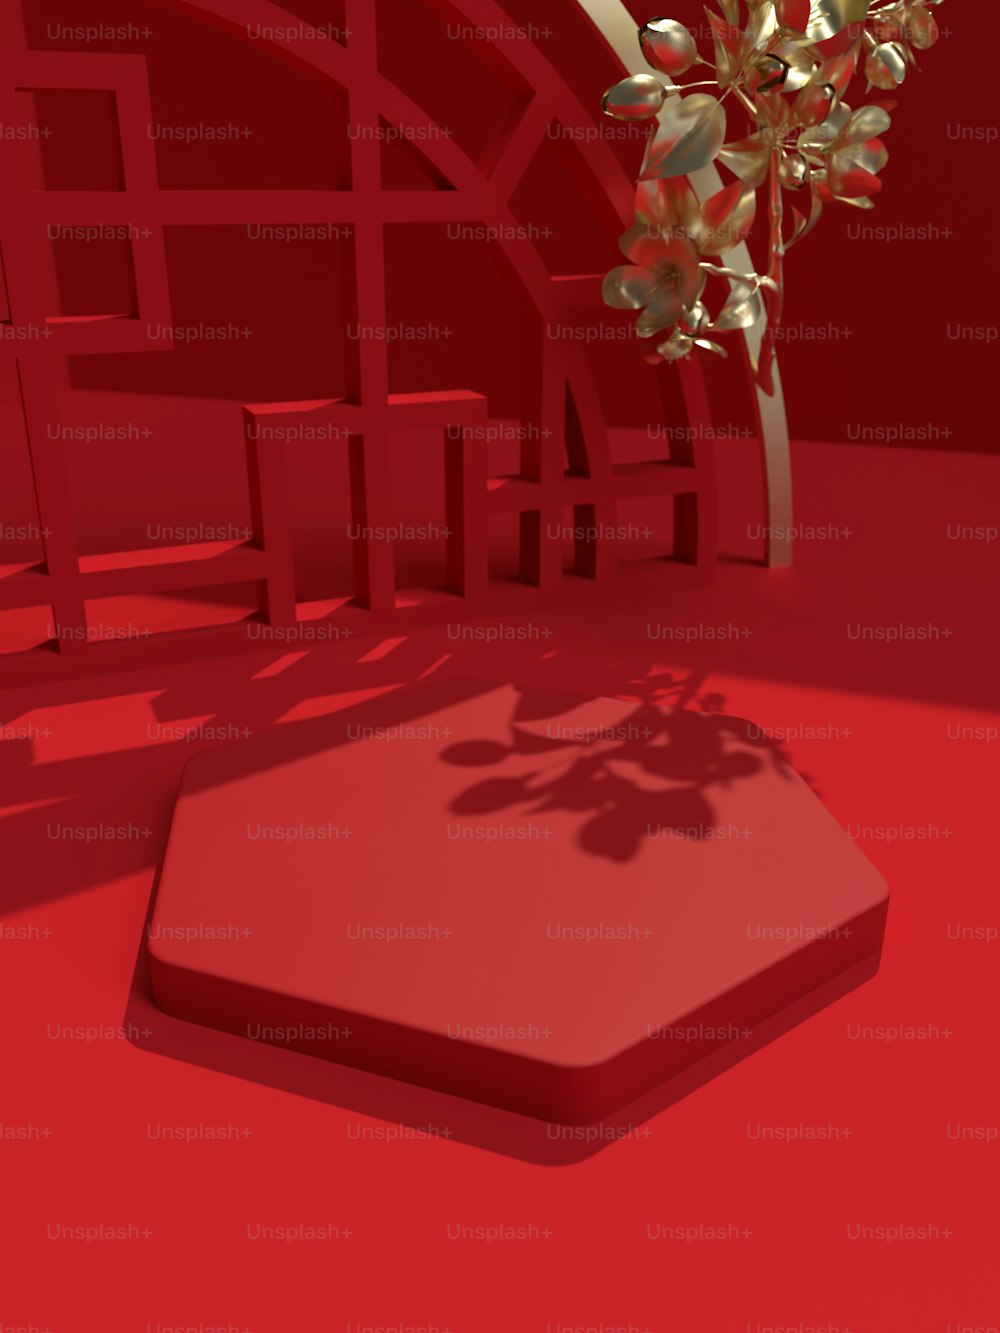 Ein 3D-Bild eines Baumes in einem roten Raum